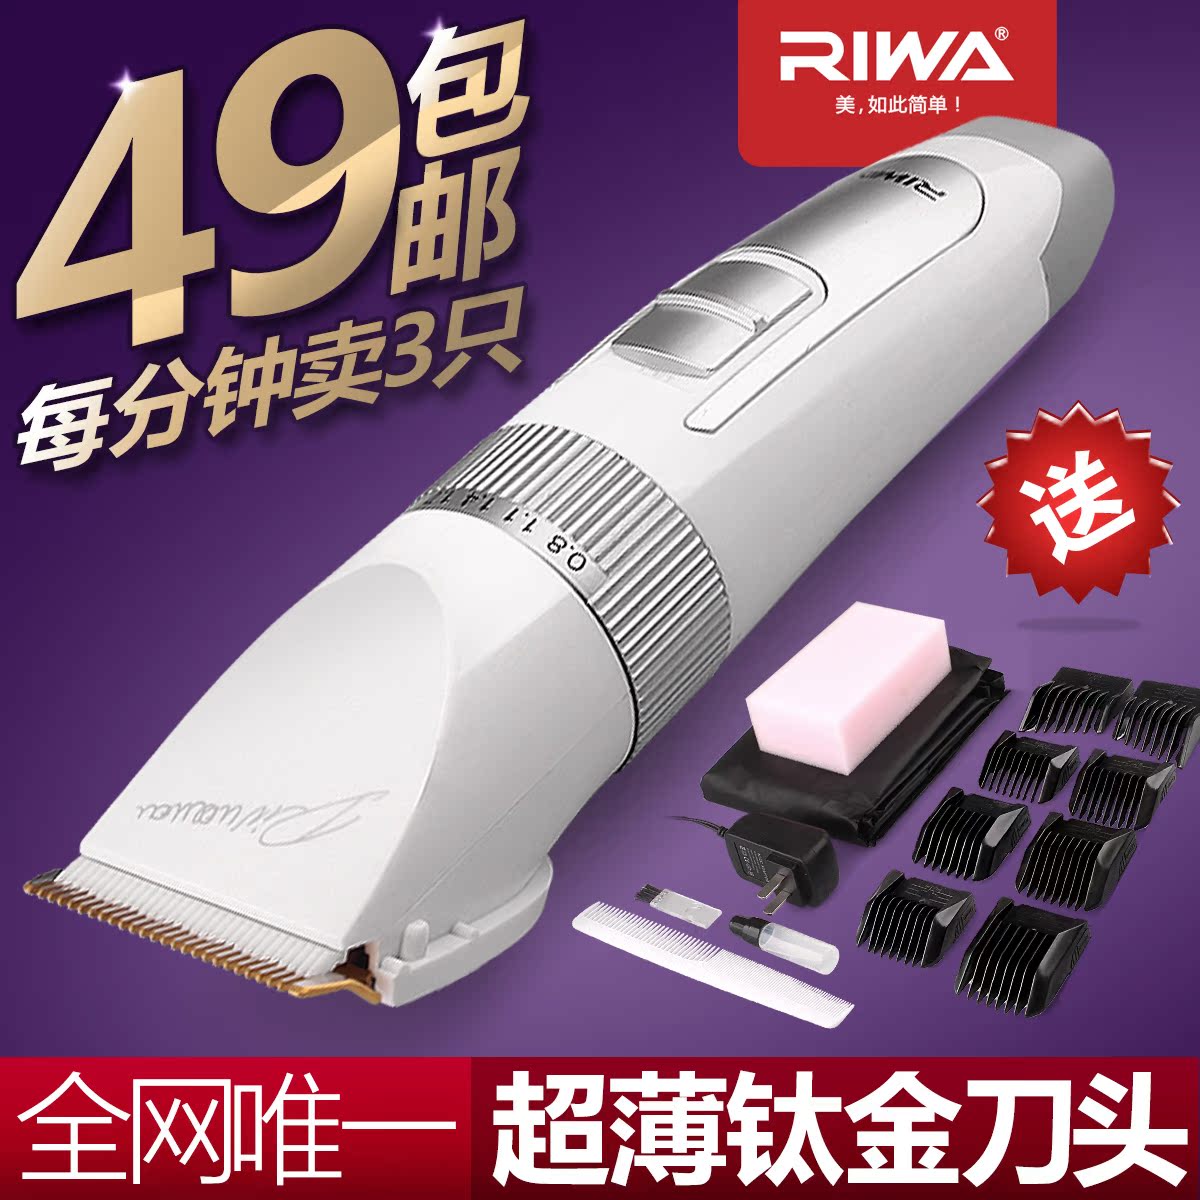 RIWA成人儿童电动理发器RE-730AK